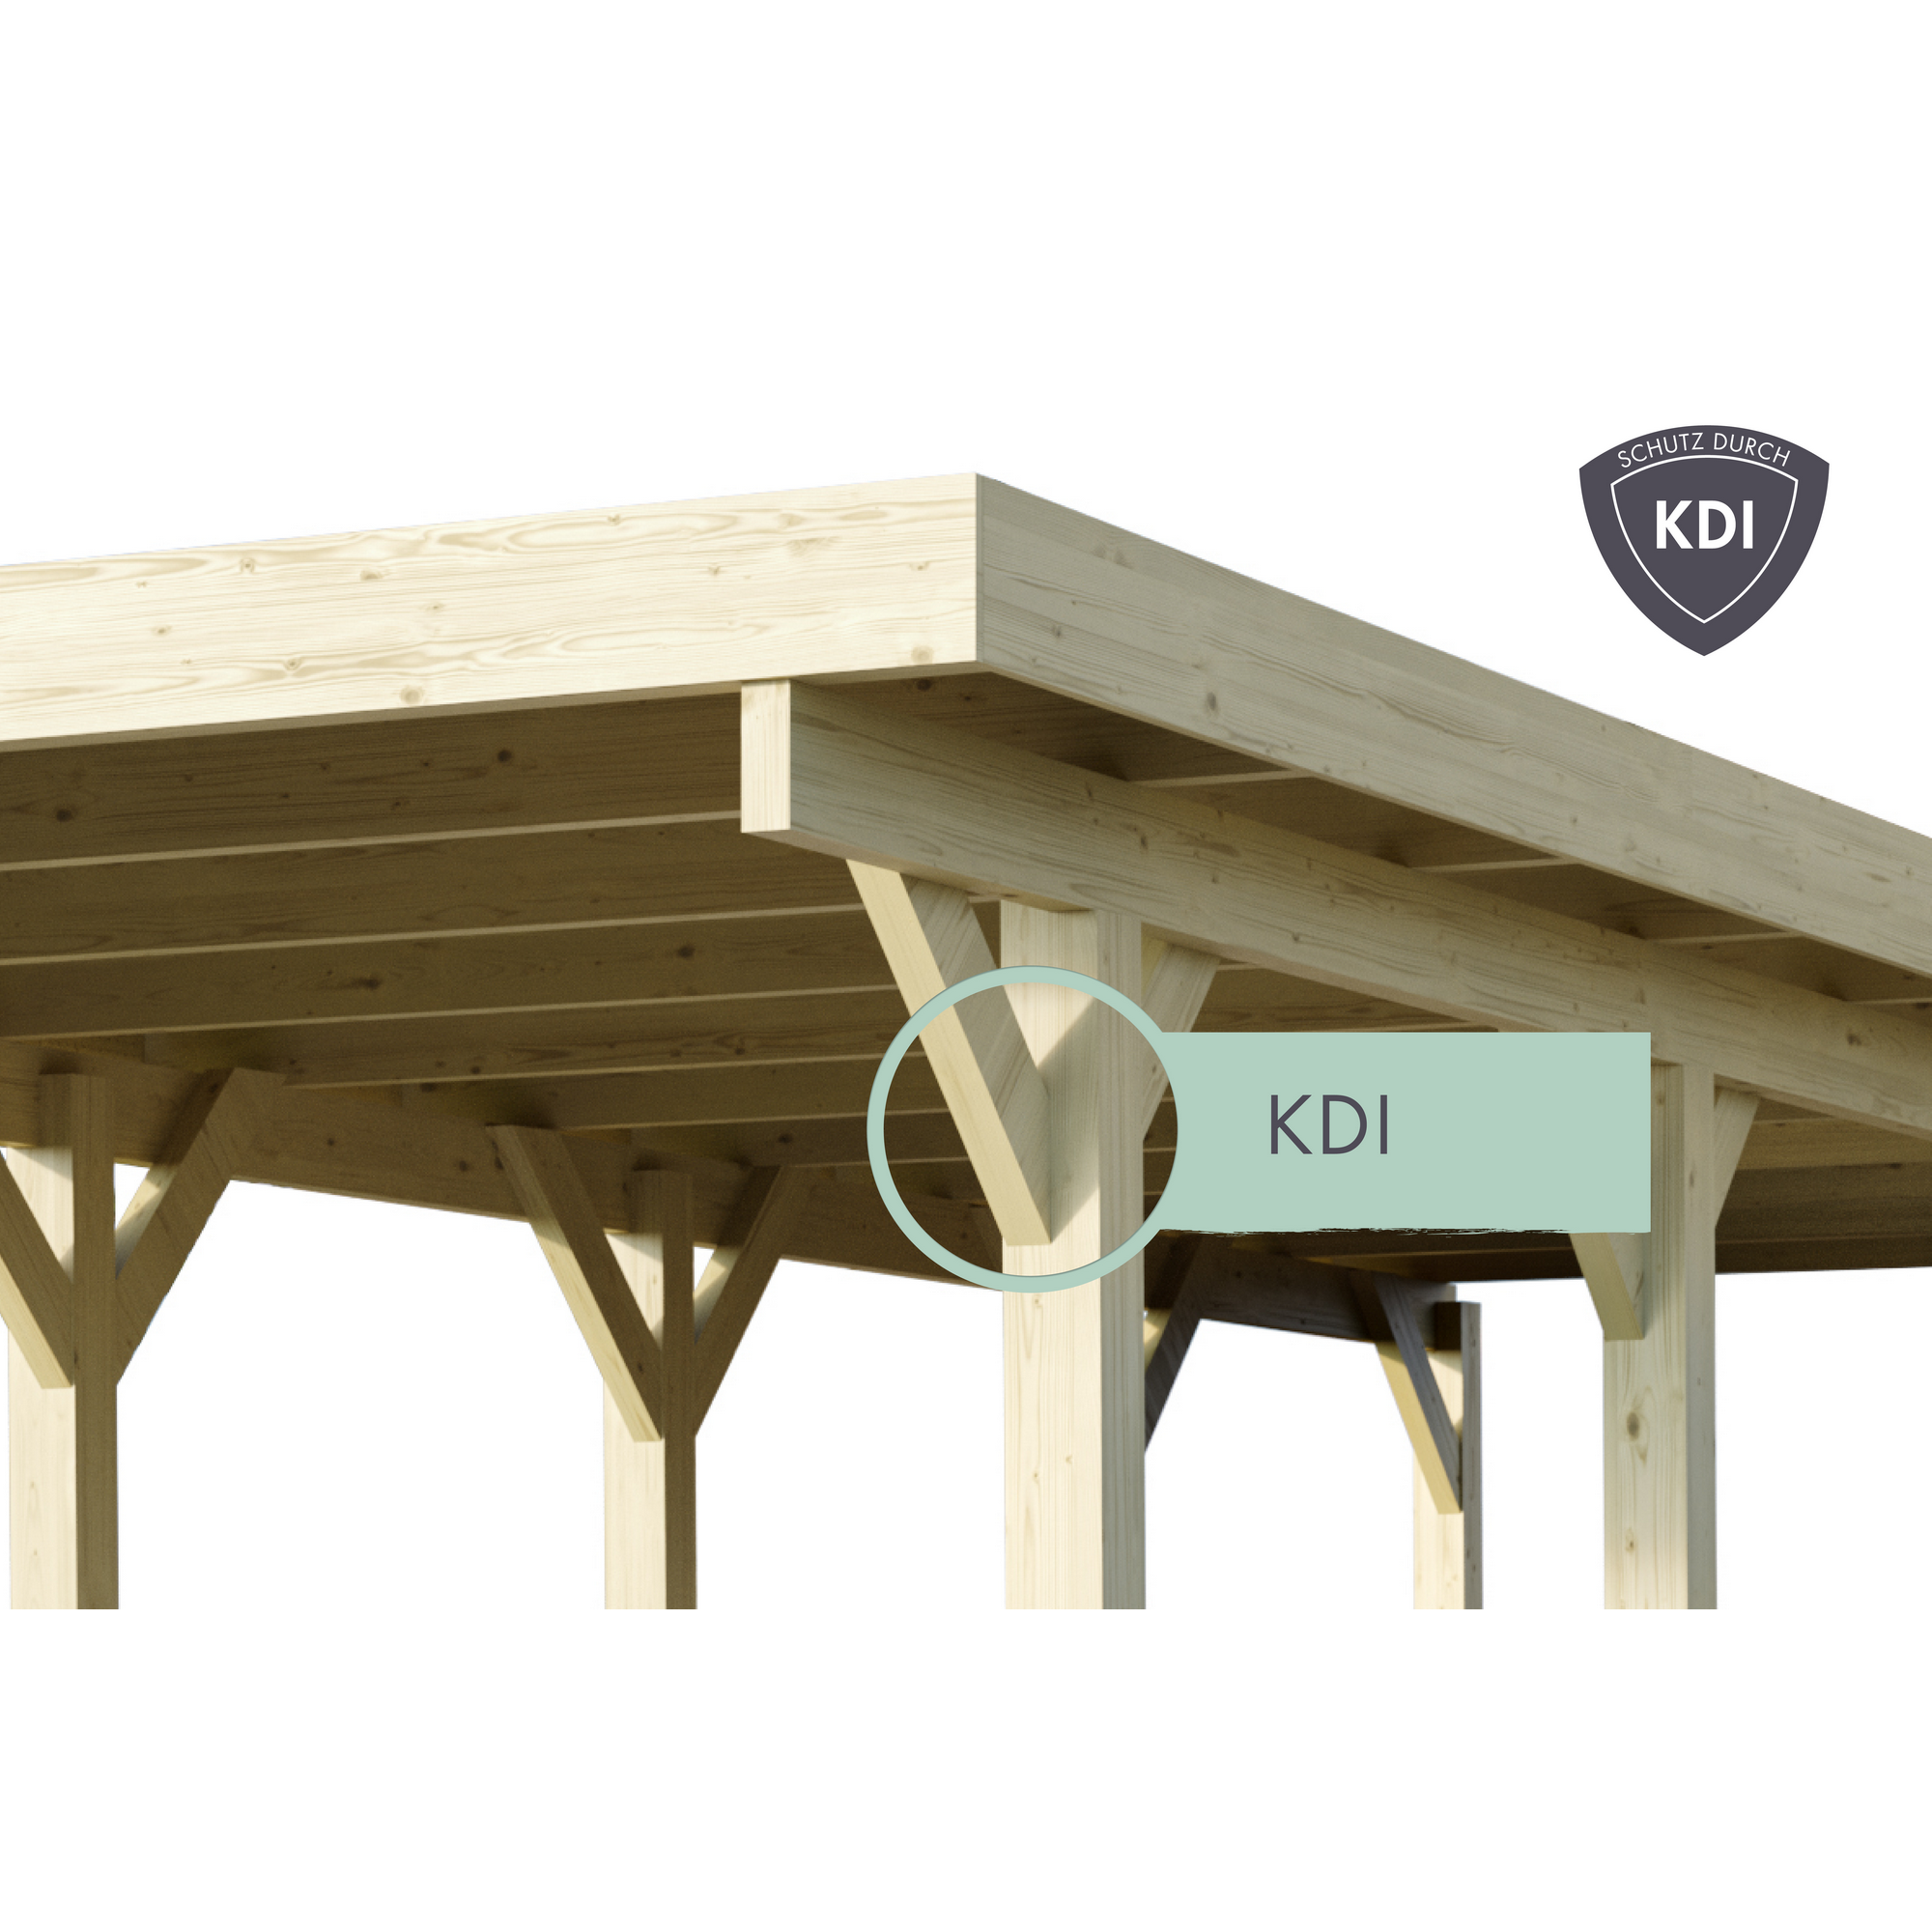 Einzelcarport 'Carlos 1' Kiefer PVC-Dach mit zwei Einfahrtsbögen 480 x 318 x 234 cm + product picture